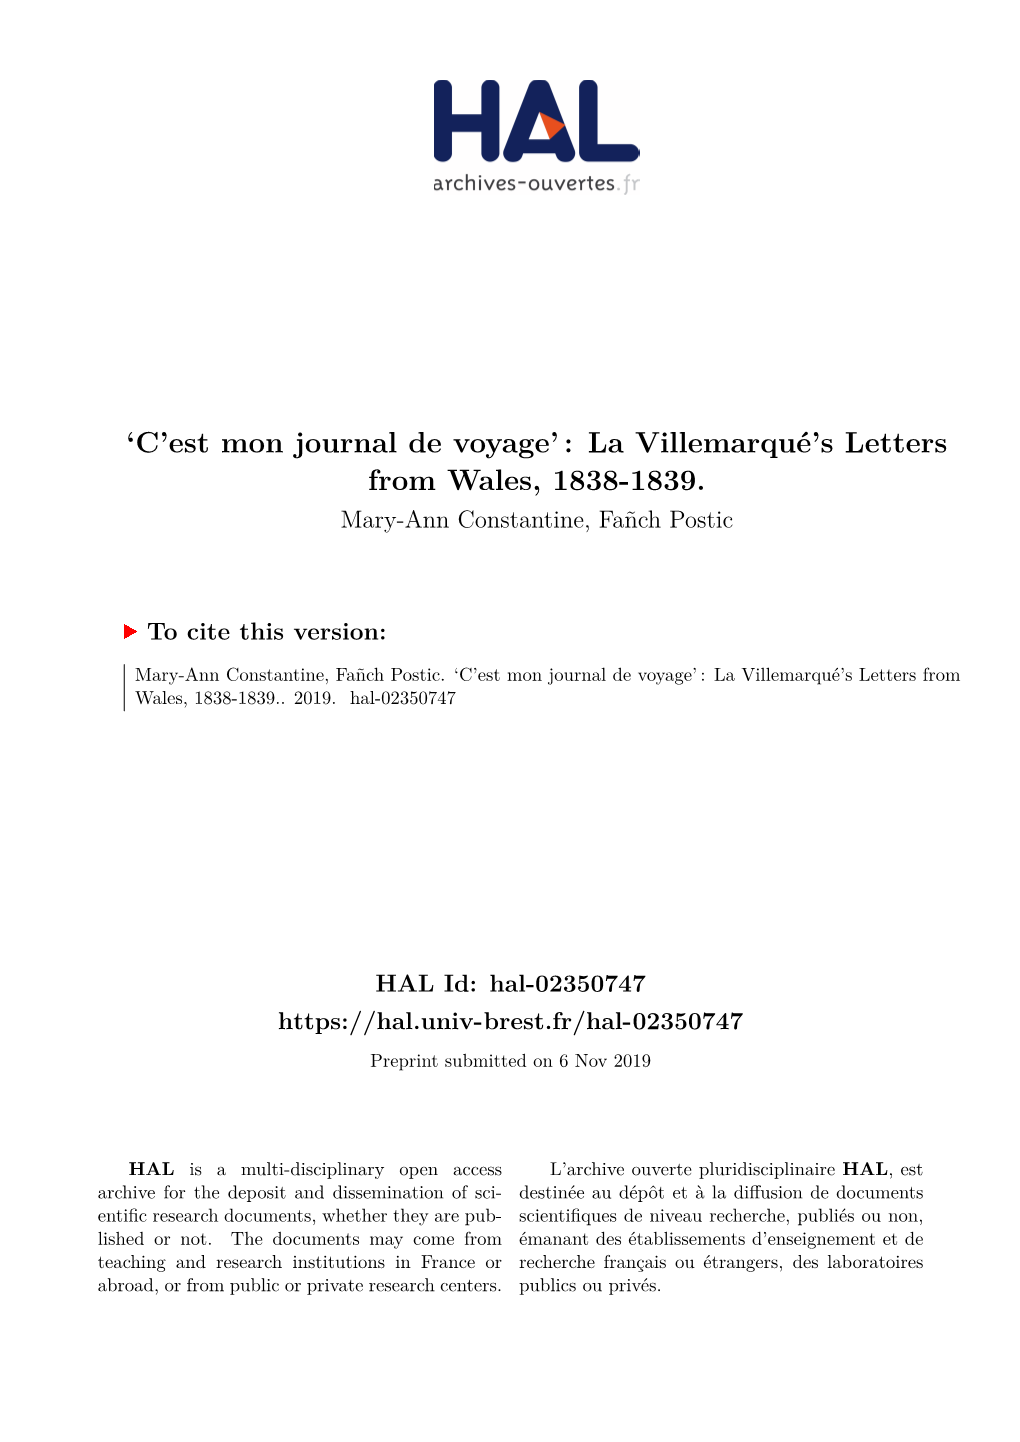 La Villemarqué's Letters from Wales, 1838-1839